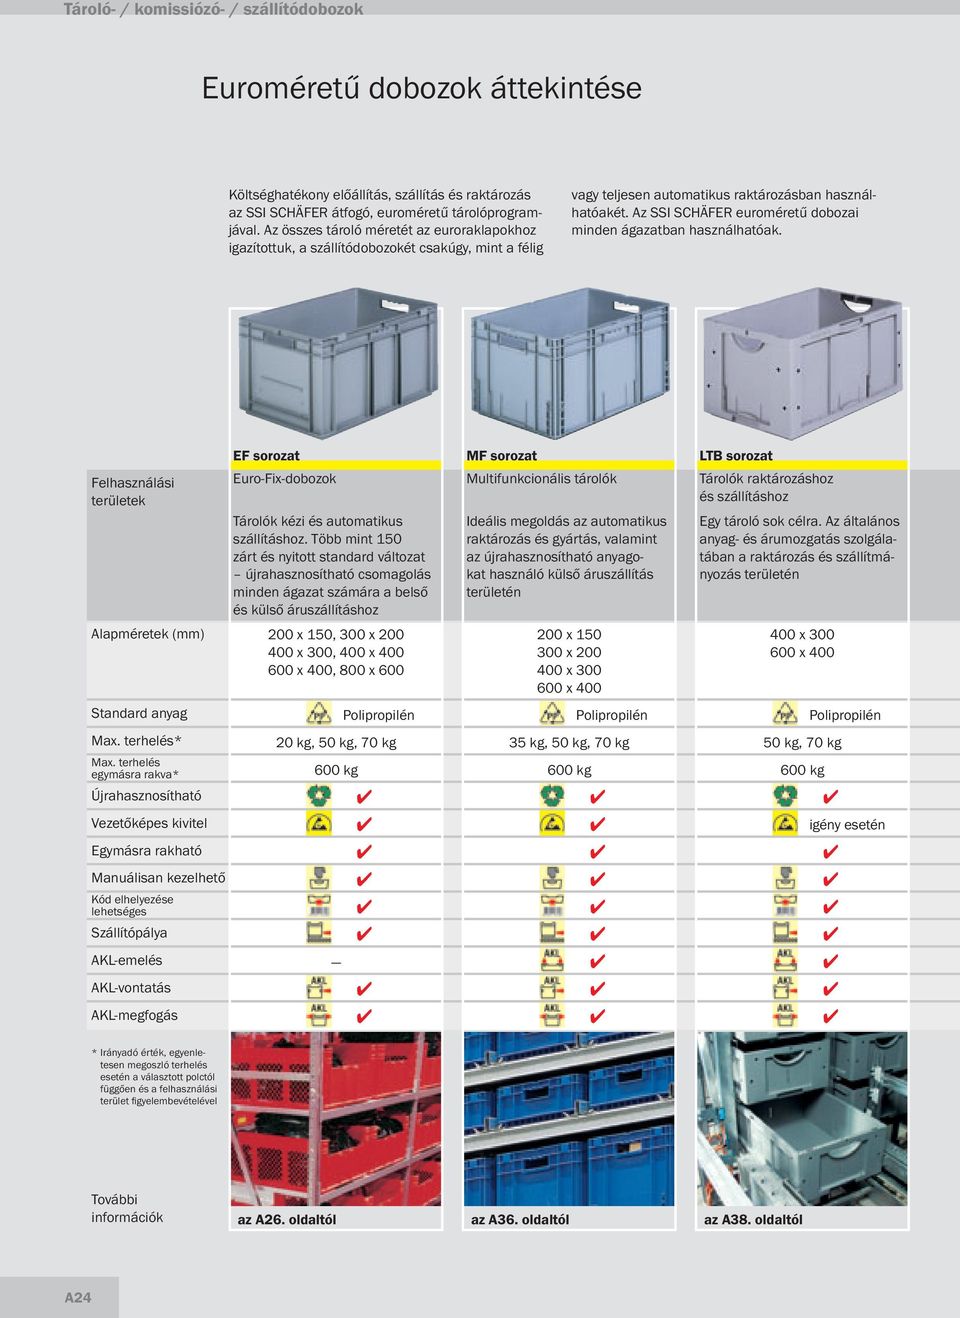 Az SSI SCHÄFER euroméretű dobozai minden ágazatban használhatóak.